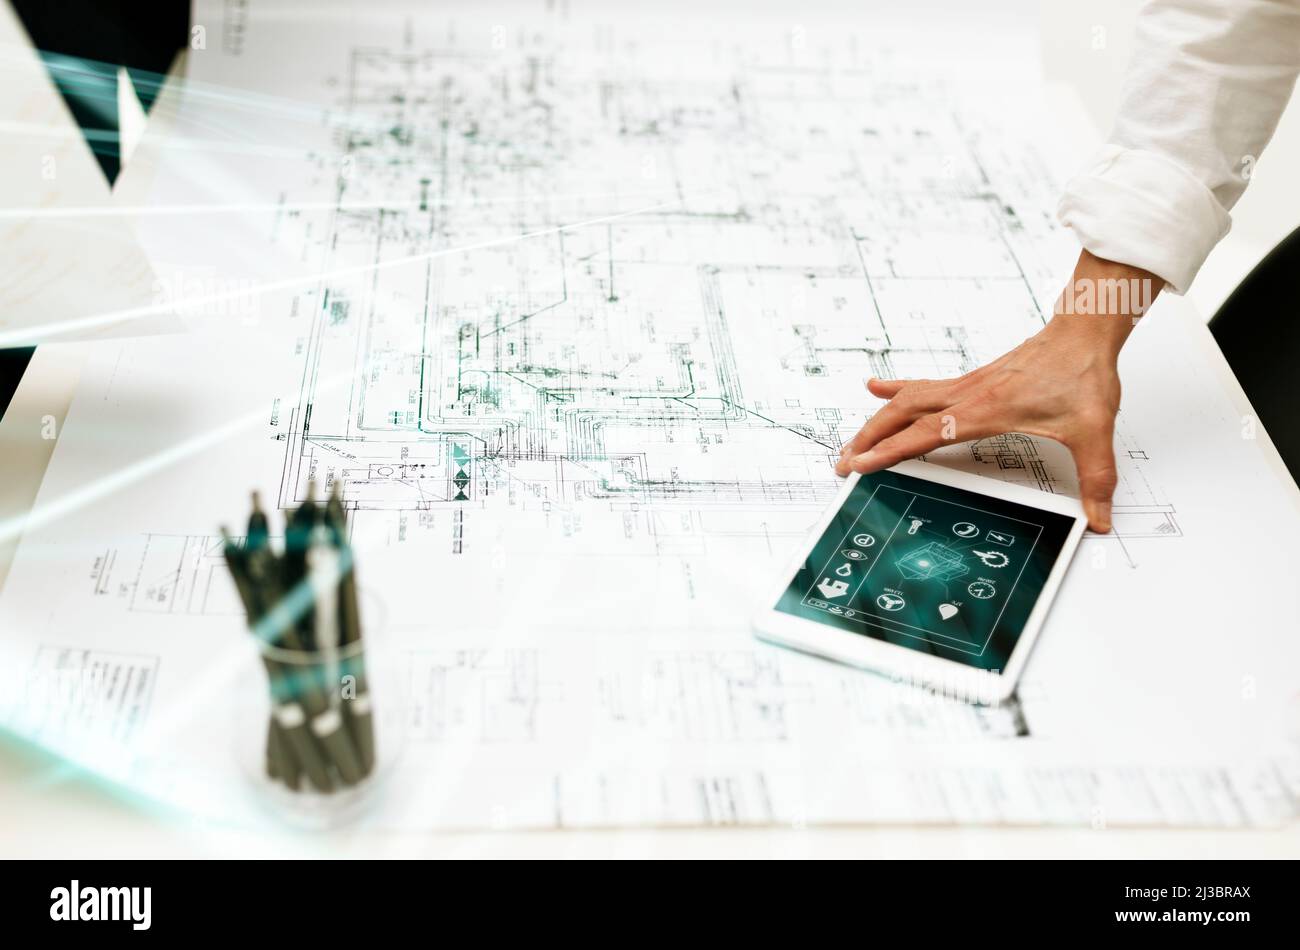 Architecte utilisant une tablette numérique sur une impression blanche Banque D'Images